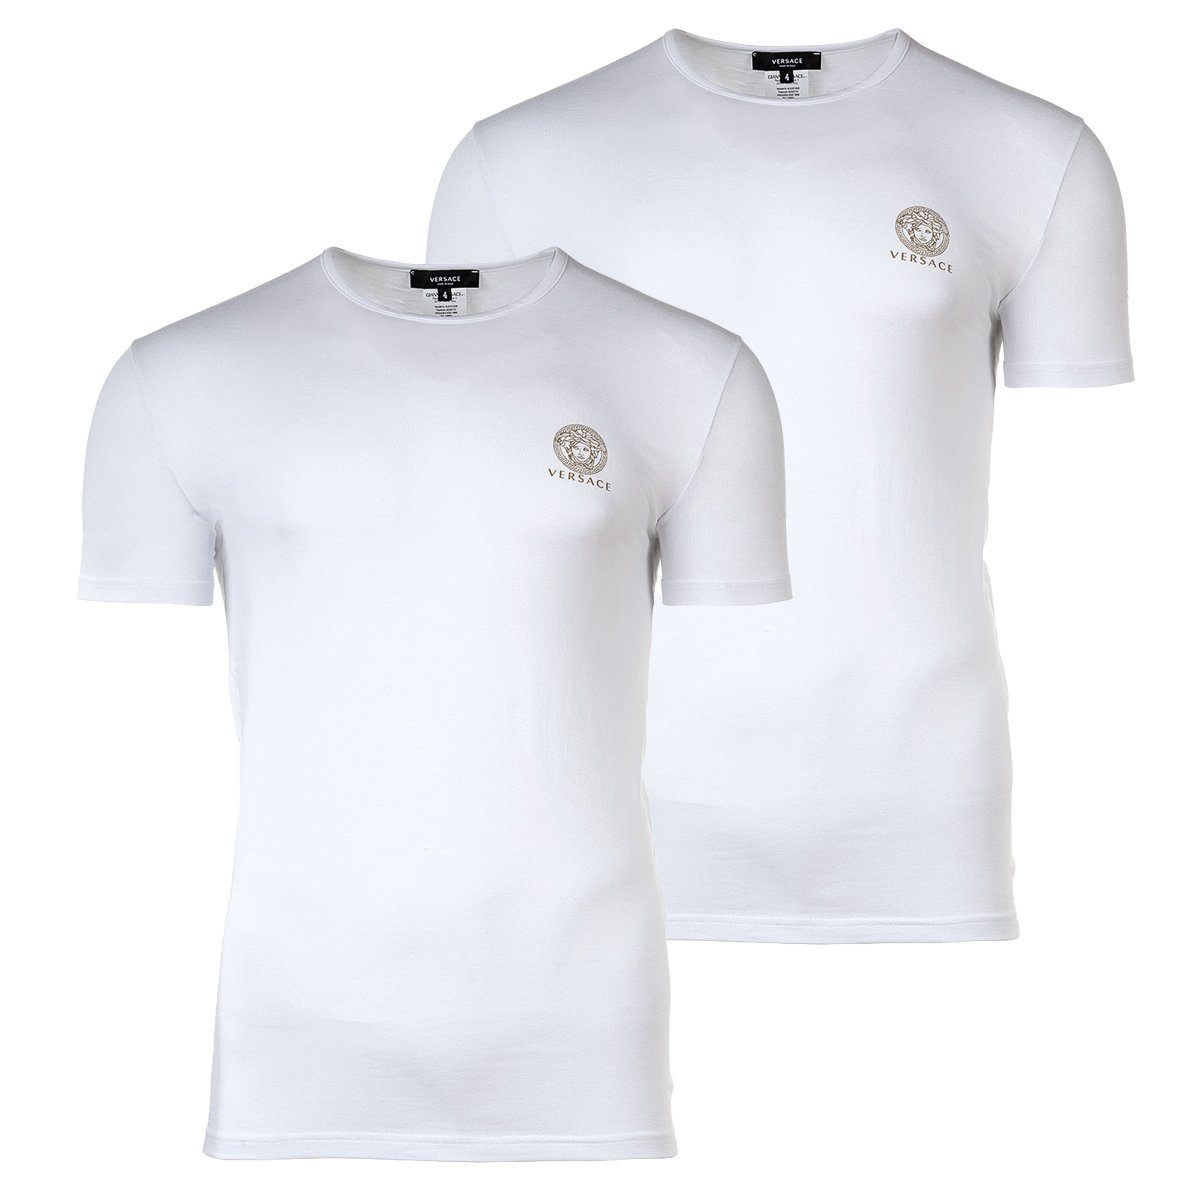 Versace T-Shirt Herren T-Shirt, 2er Pack - Unterhemd, Rundhals Weiß